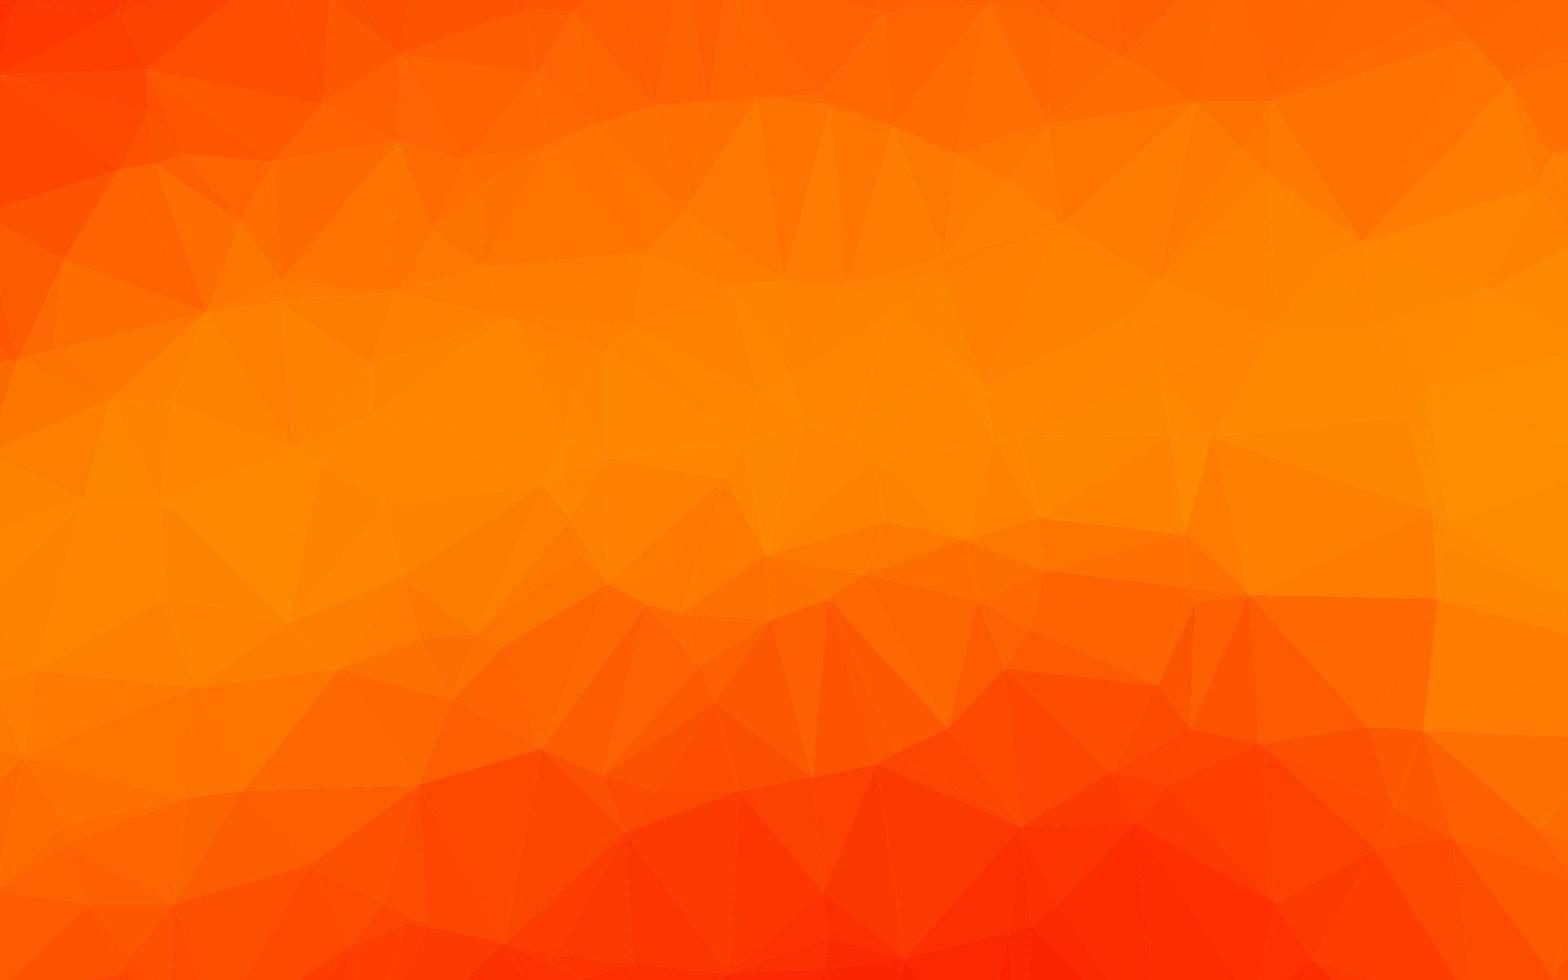 poligonale vettoriale arancione chiaro.